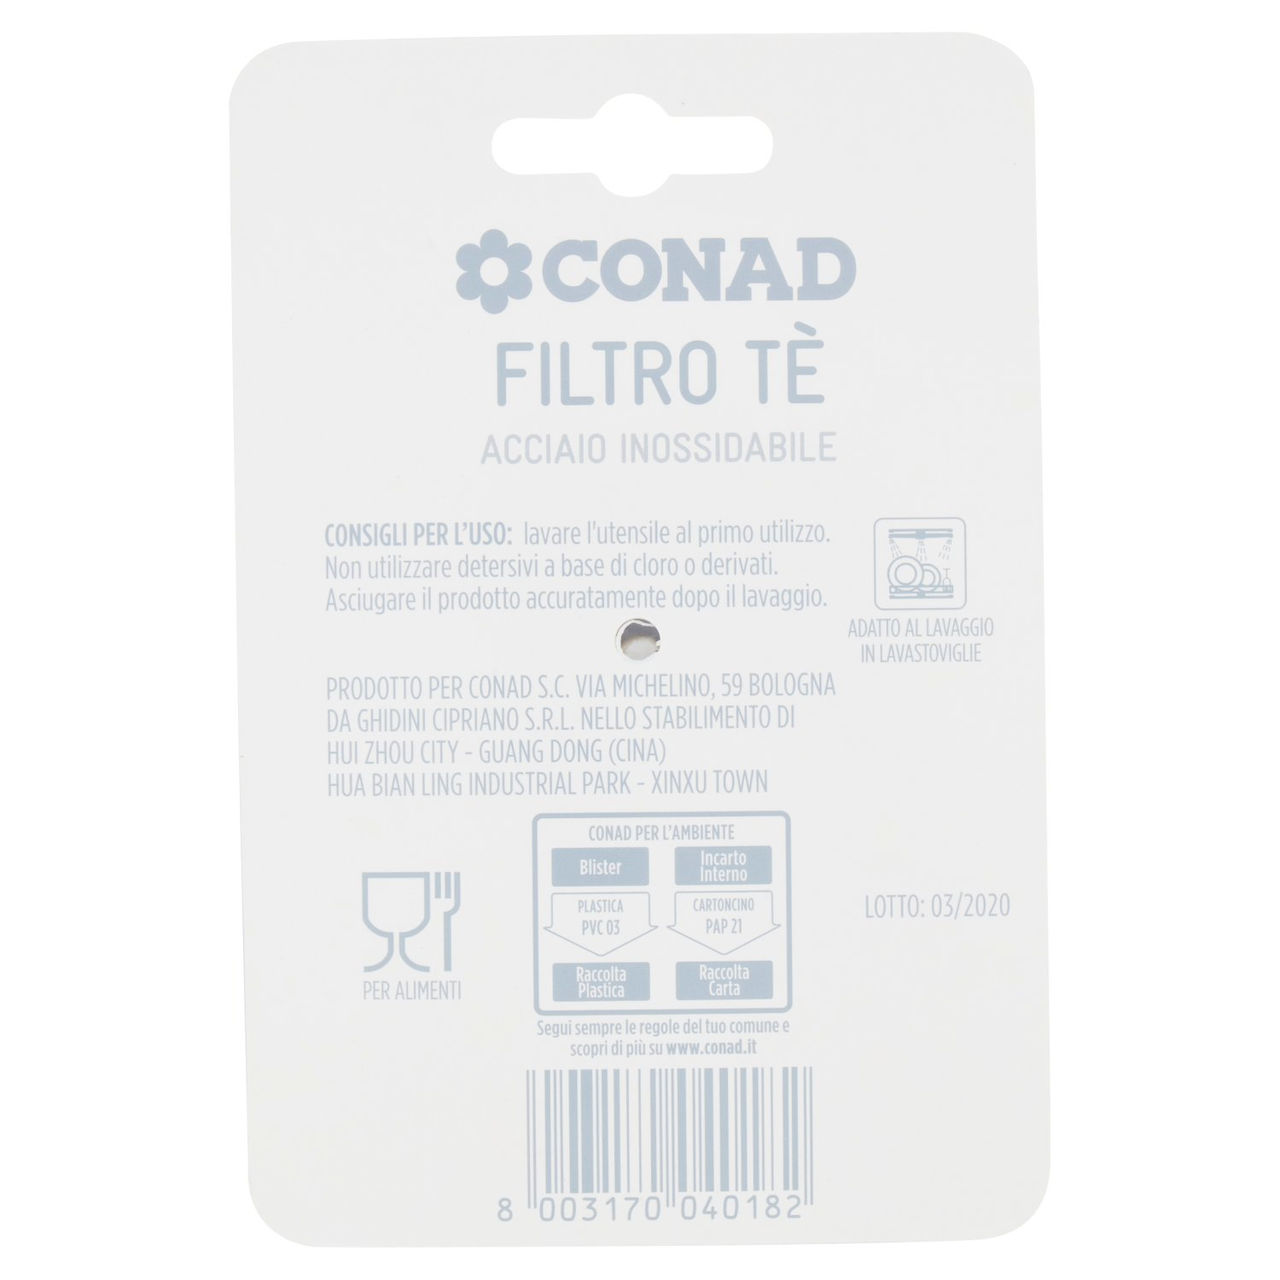 CONAD Filtro Tè Acciaio inossidabile